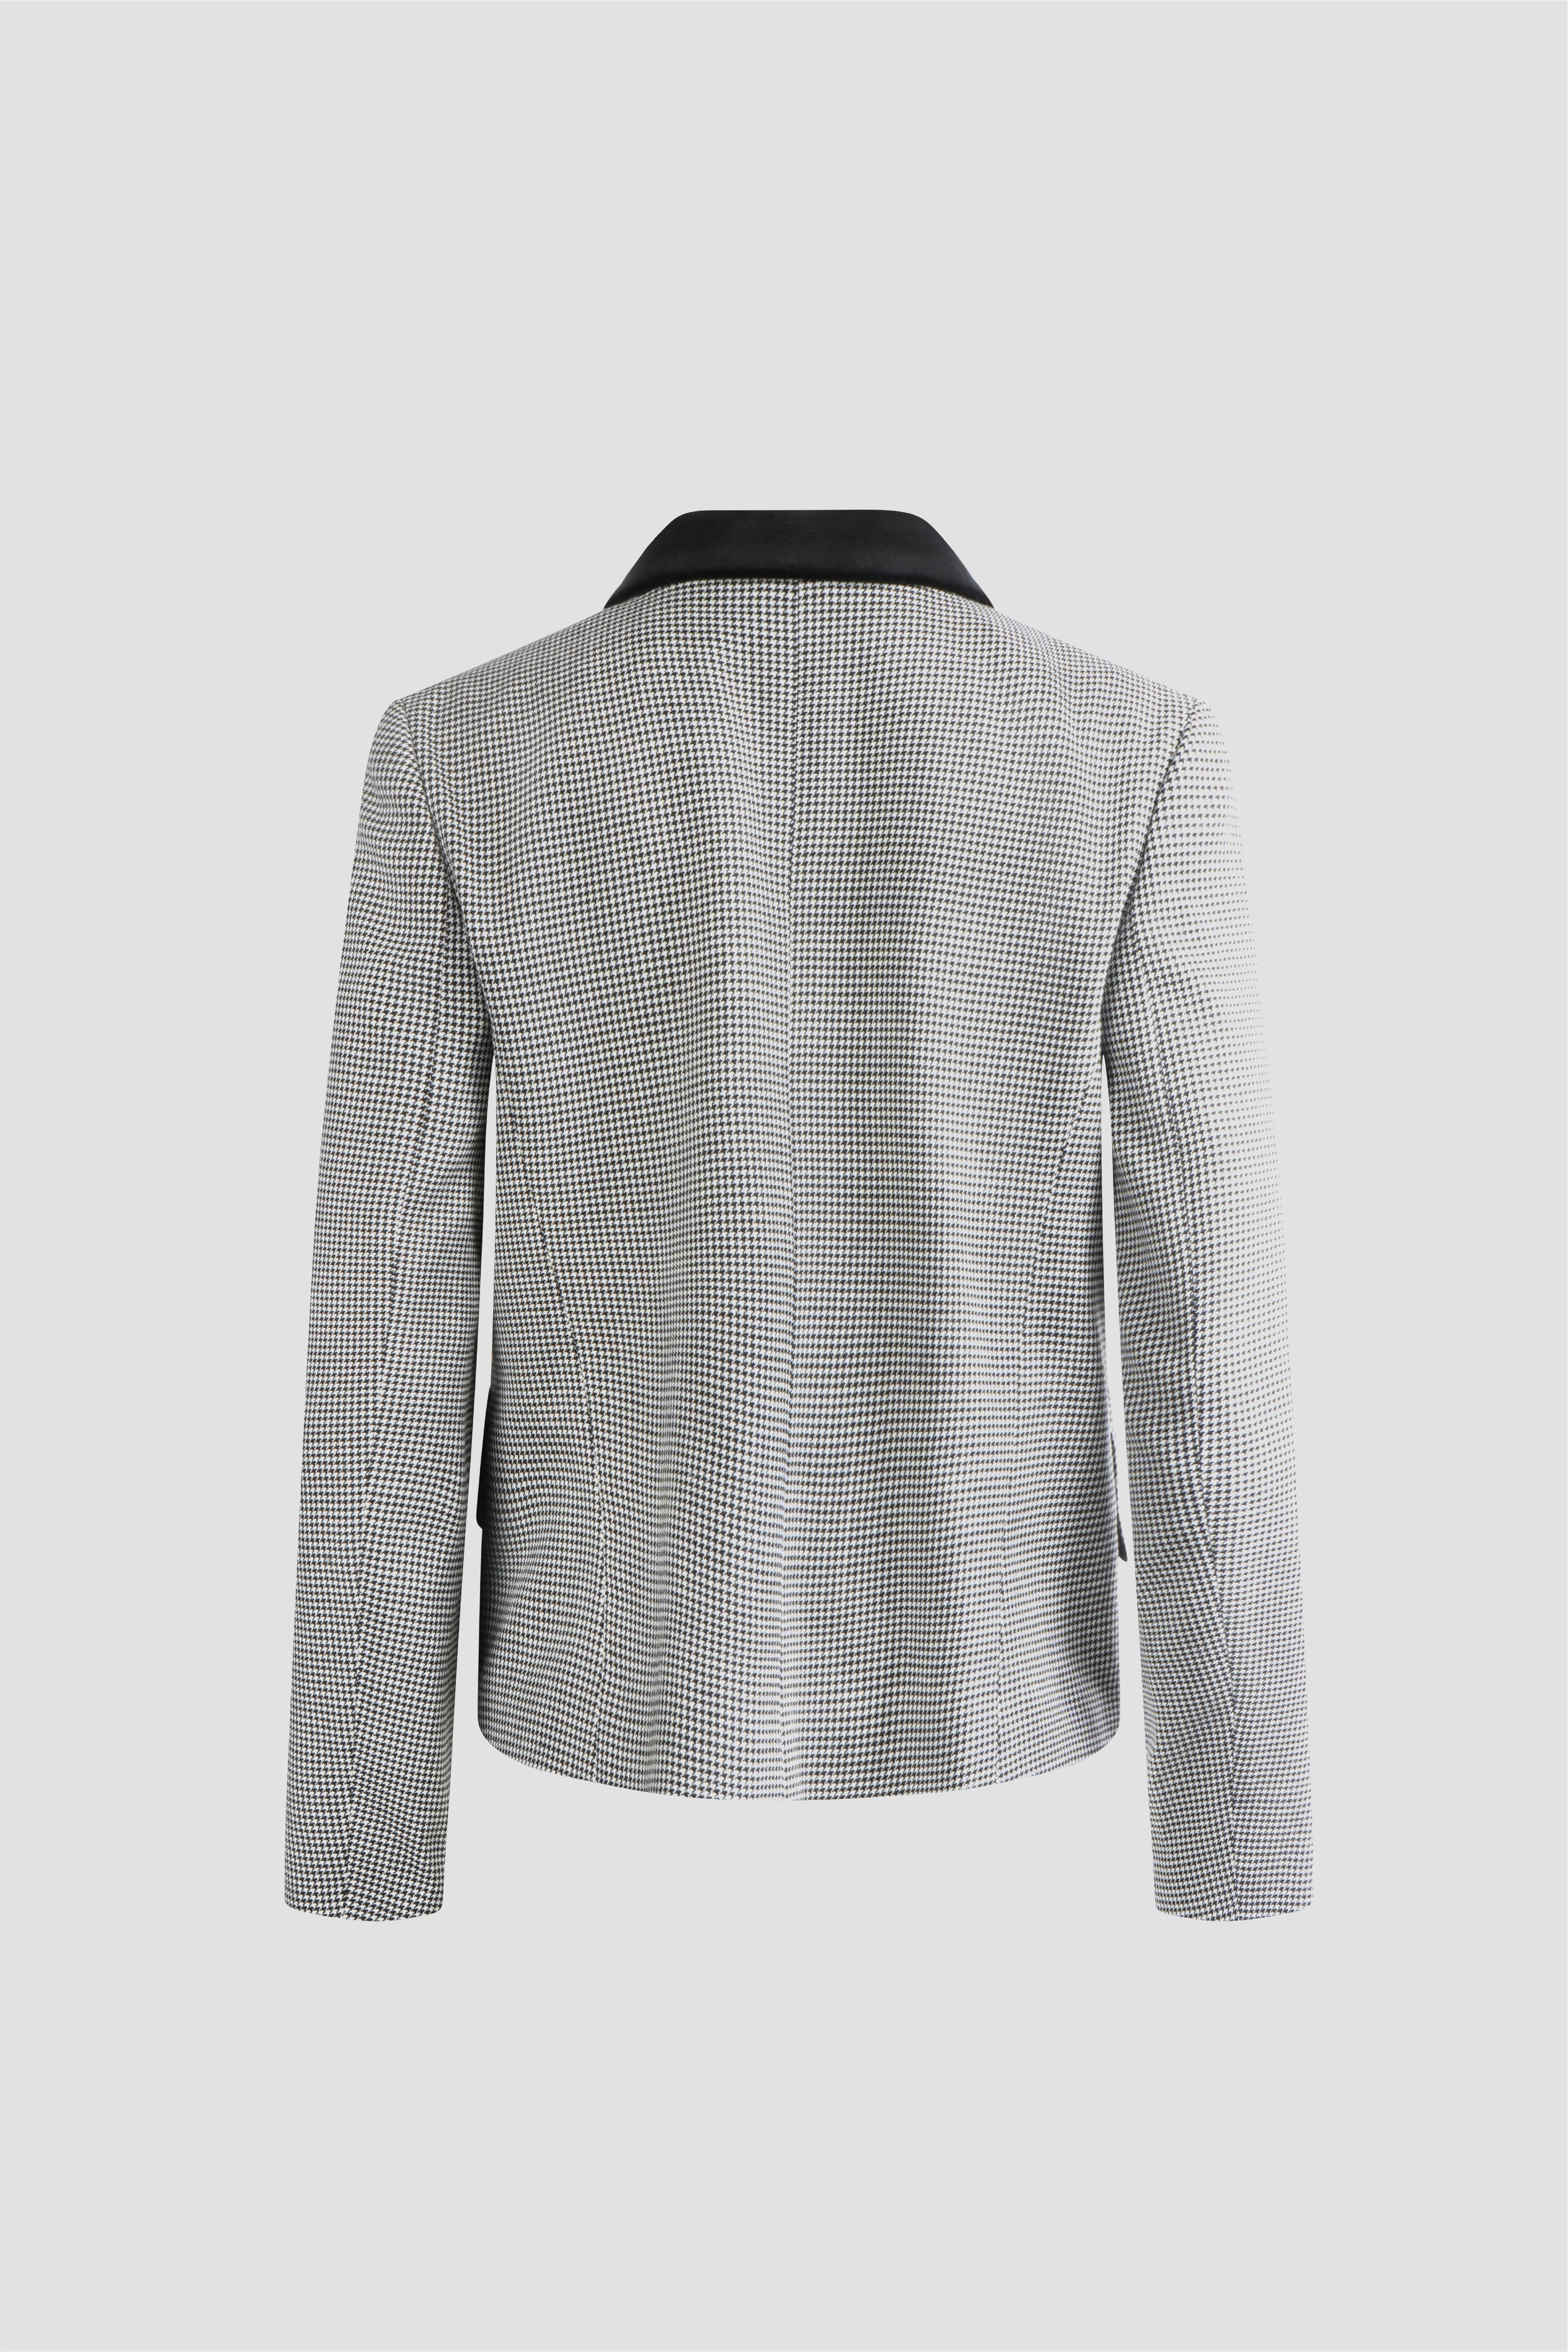 Selectshop FRAME - COMME DES GARÇONS GIRL Jacket Outerwear Concept Store Dubai